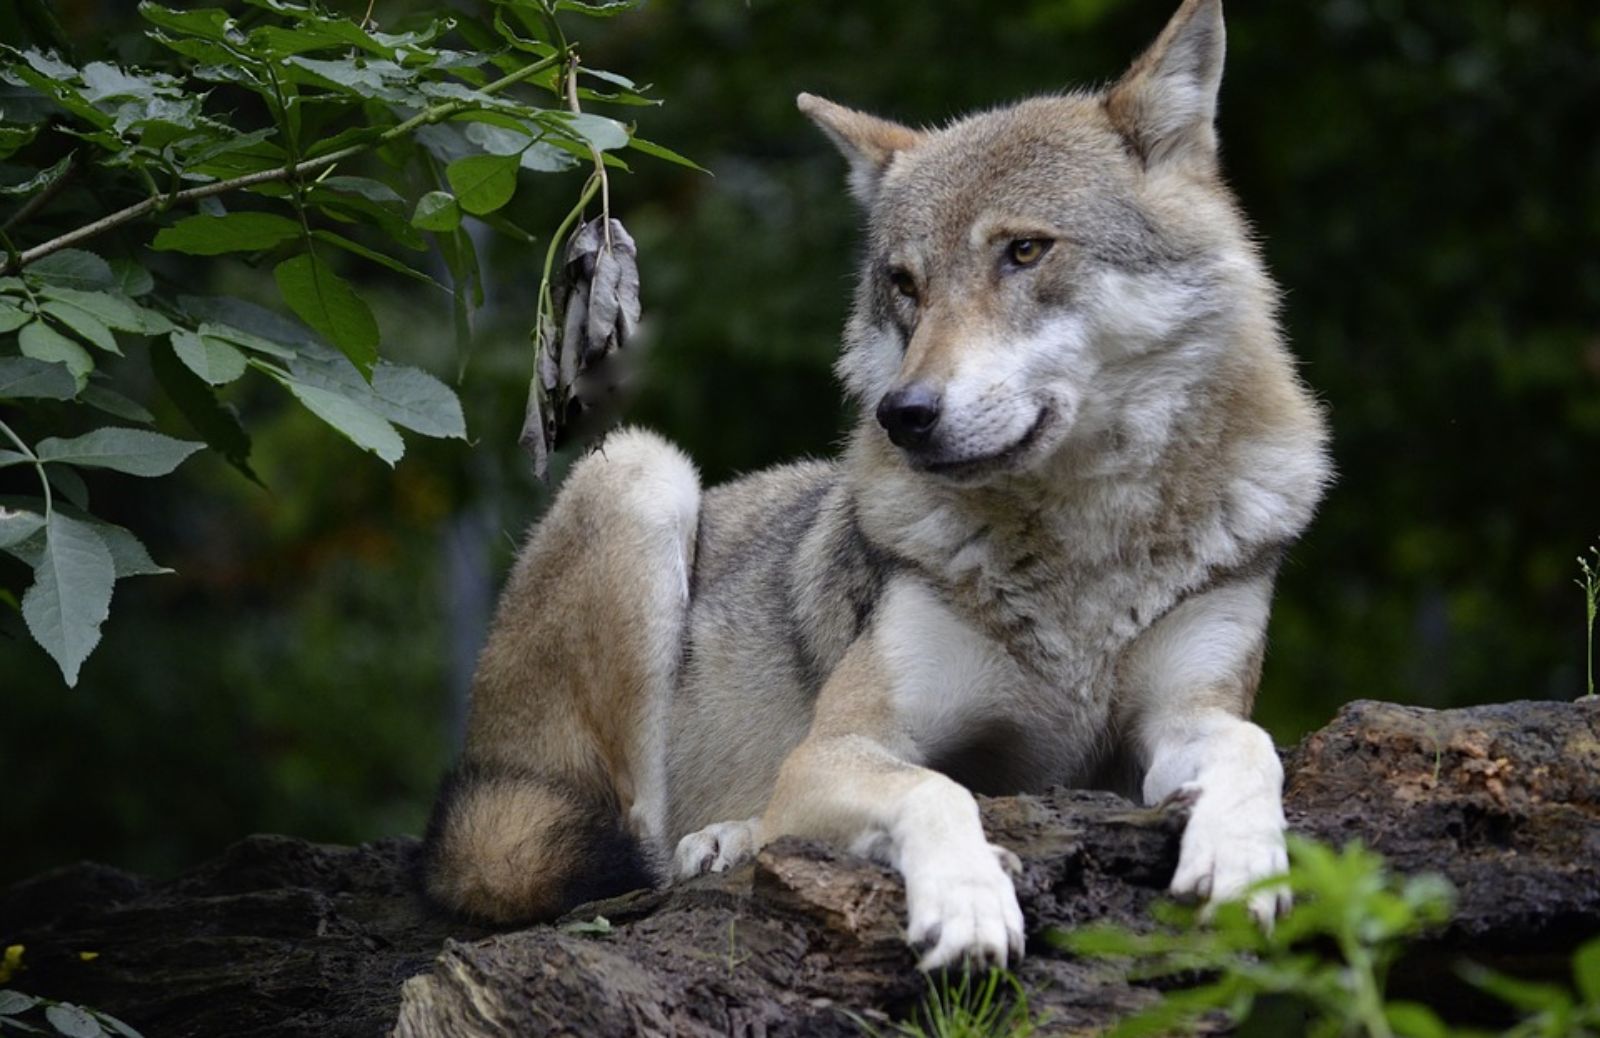 Cani e lupi: differenze e somiglianze